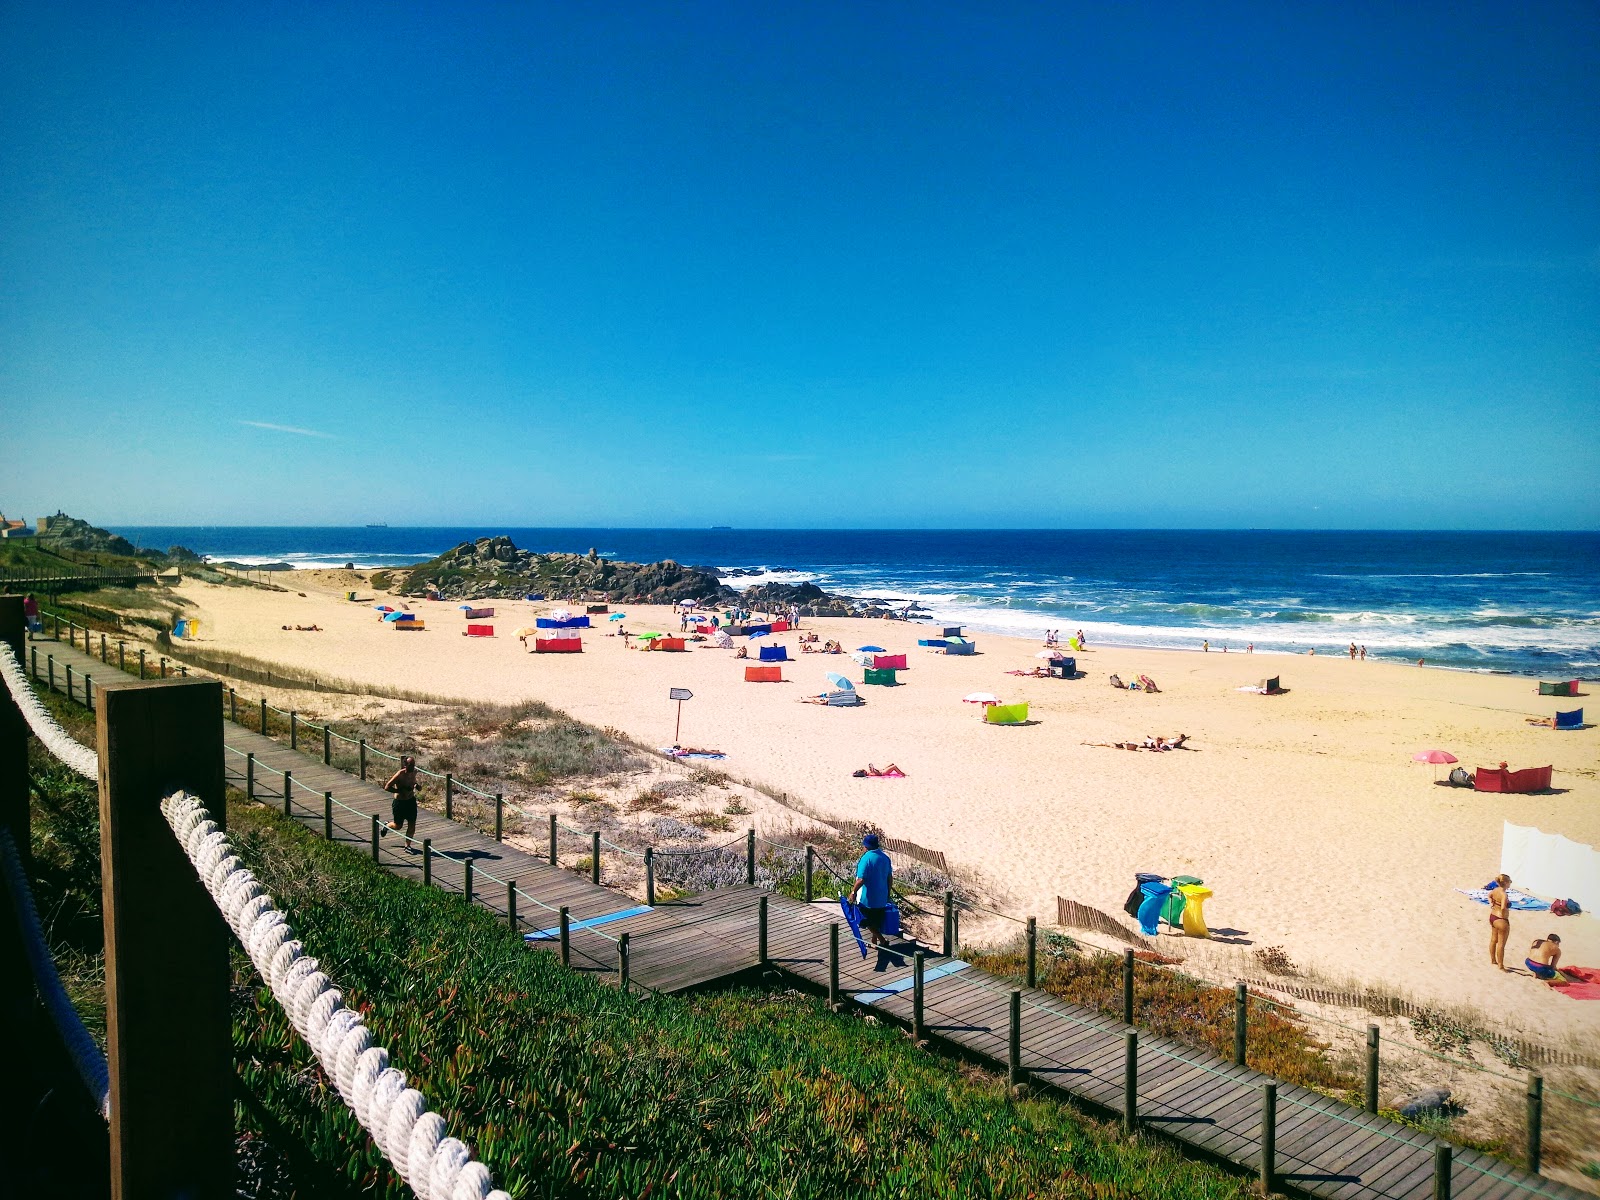 Praia do Aterro'in fotoğrafı parlak ince kum yüzey ile